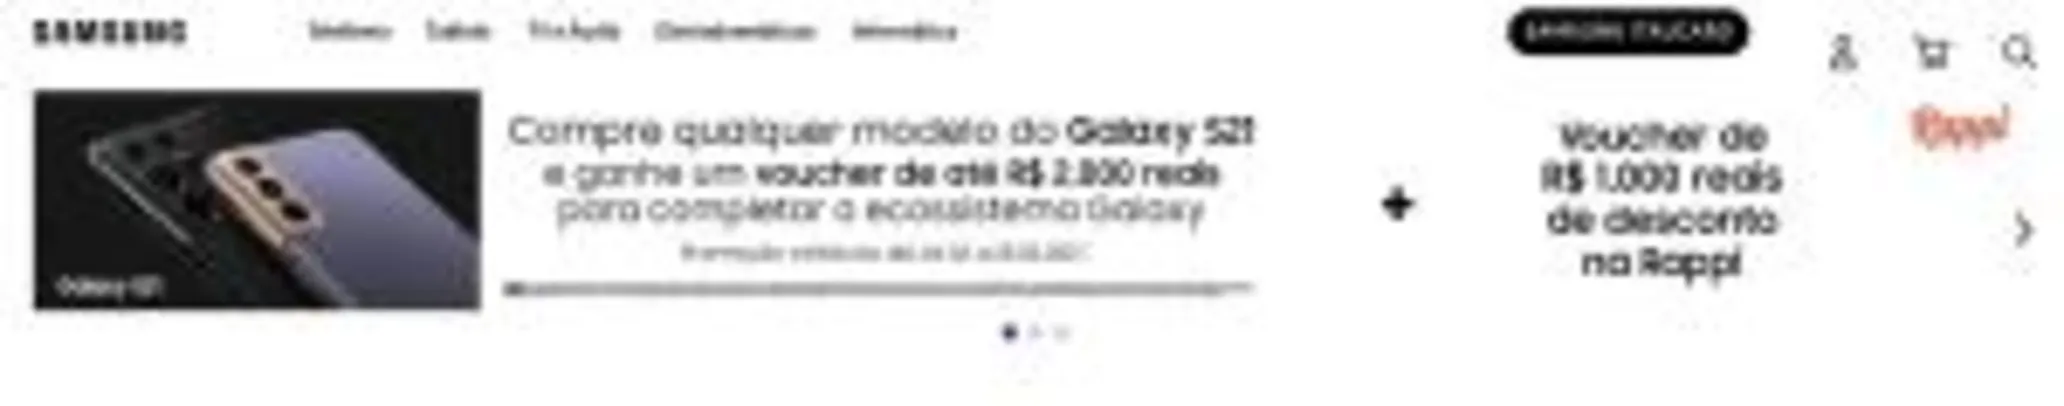 Samsung e Rappi - Ganhe Voucher de R$1000 no Rappi na compra do Galaxy S21 | R$5999